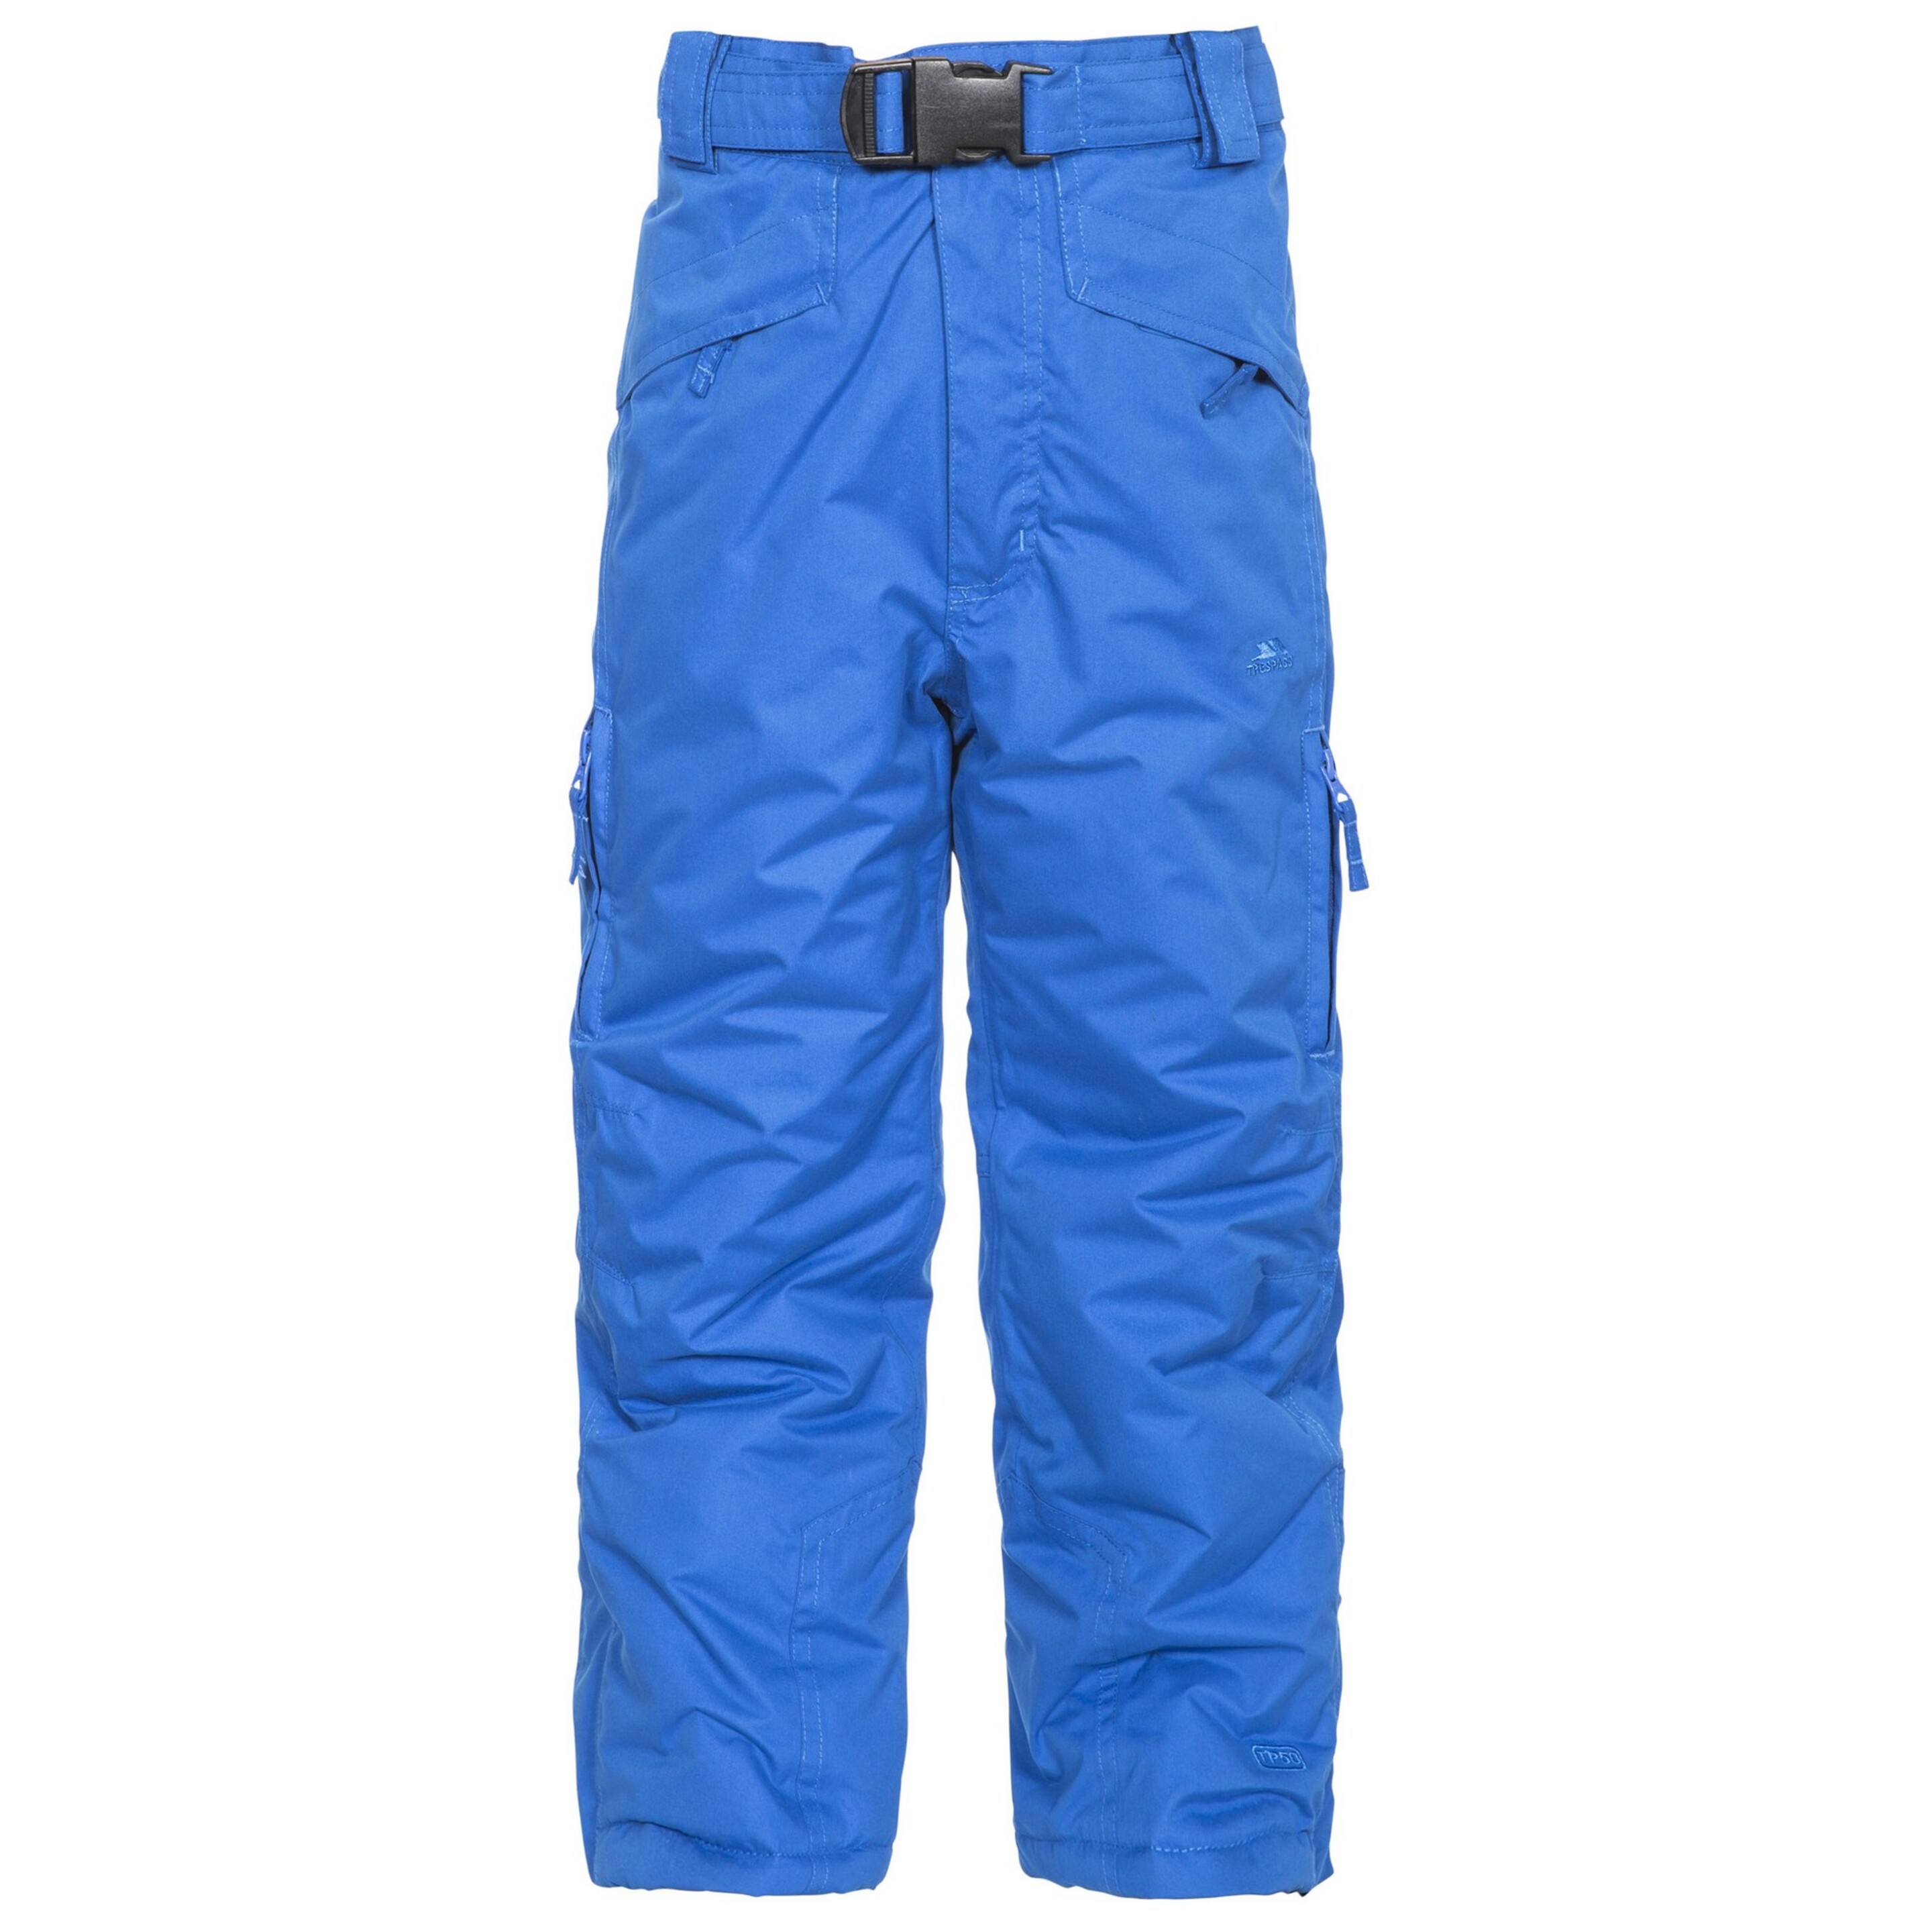 Pantalones De Esquí Impermeables Acolchados Con Tirantes Desmontables Trespass Marvelous